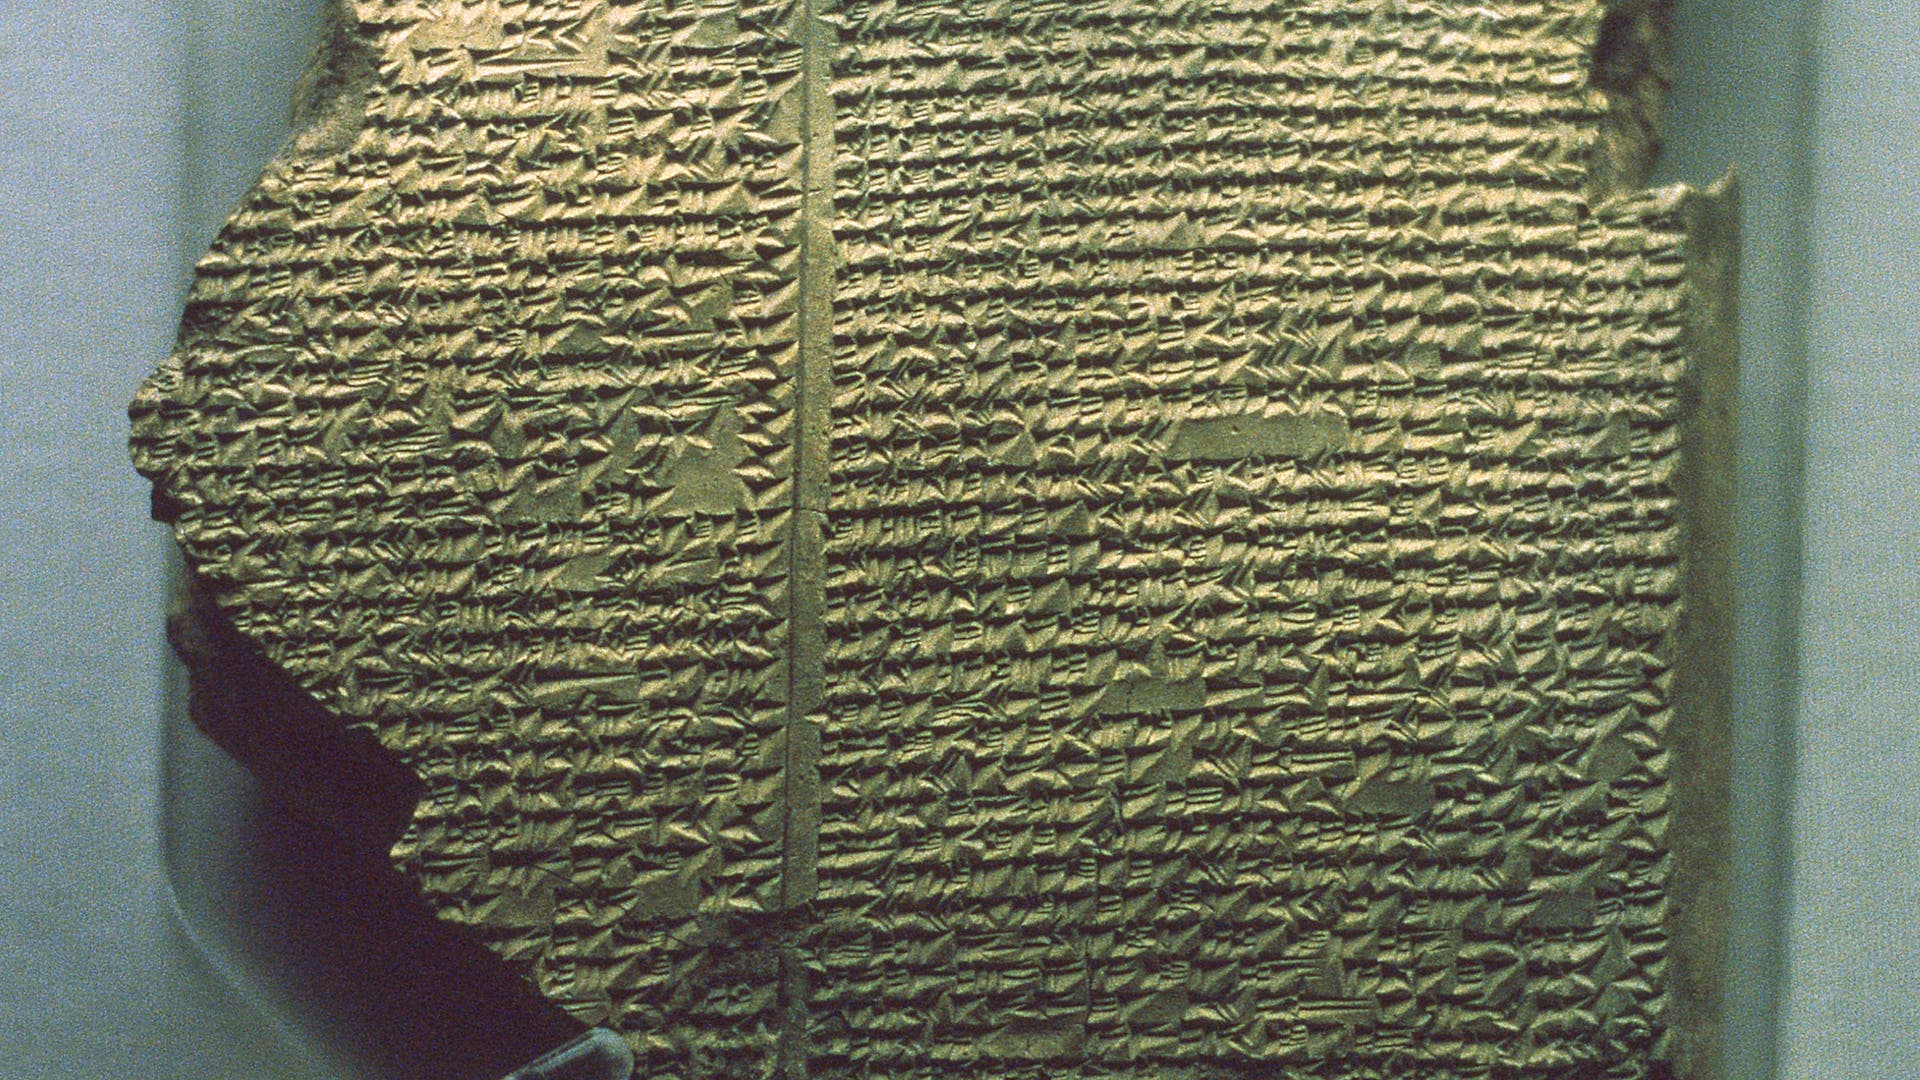 Een kort verhaal over de man die het Gilgamesj-epos herontdekte